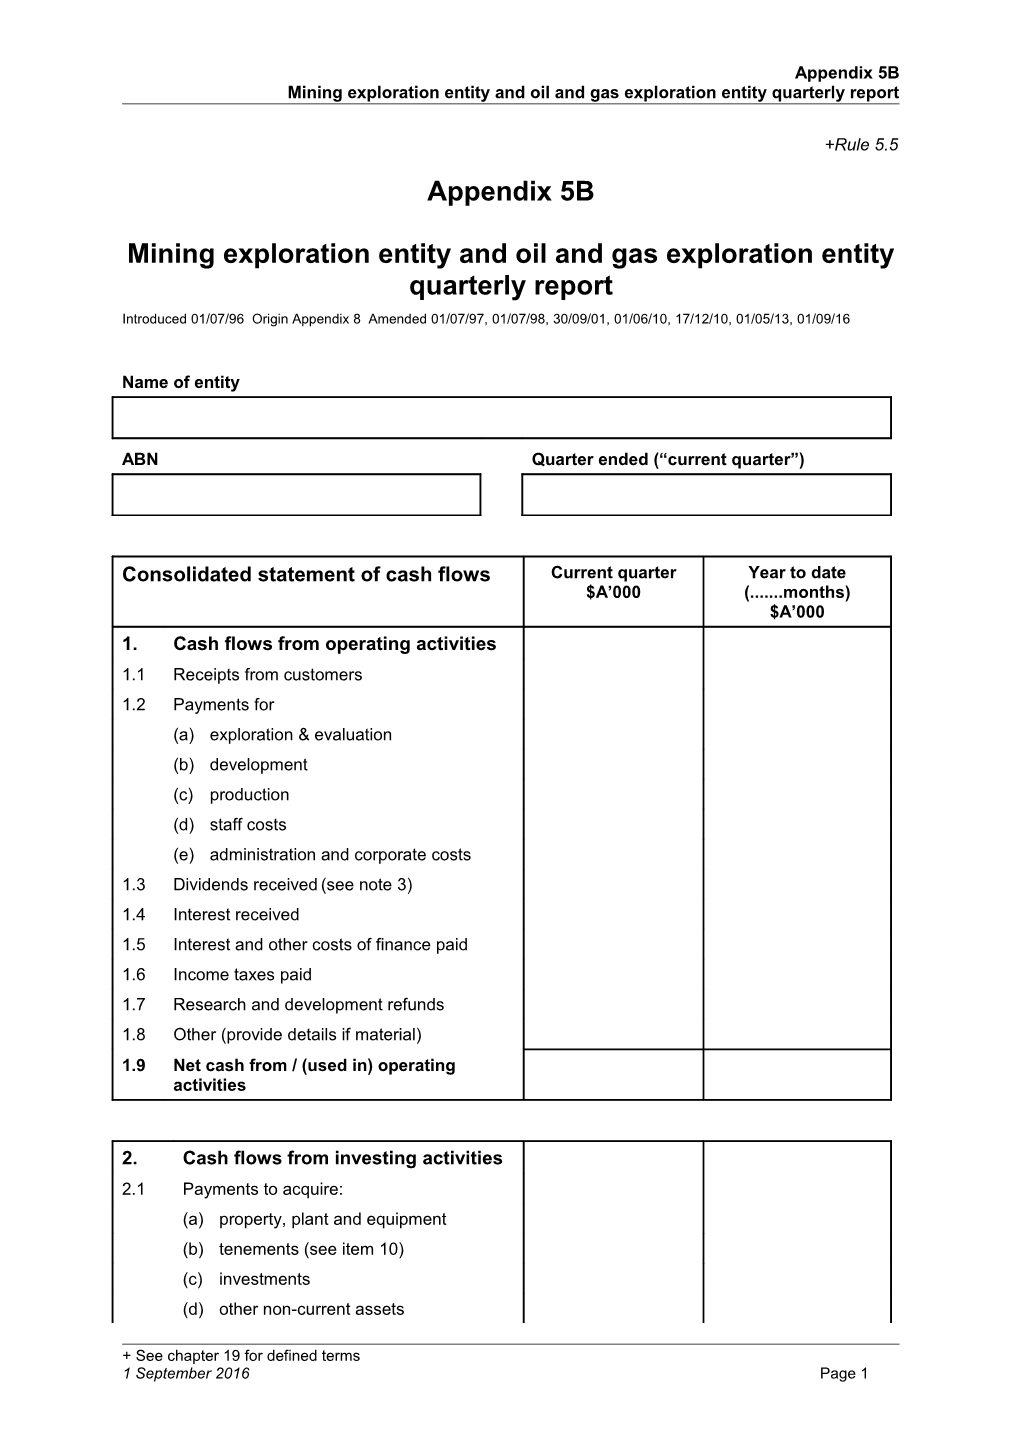 ASX Listing Rules Appendix 5B - Mining Exploration Entity and Oil and Gas Exploration Entity